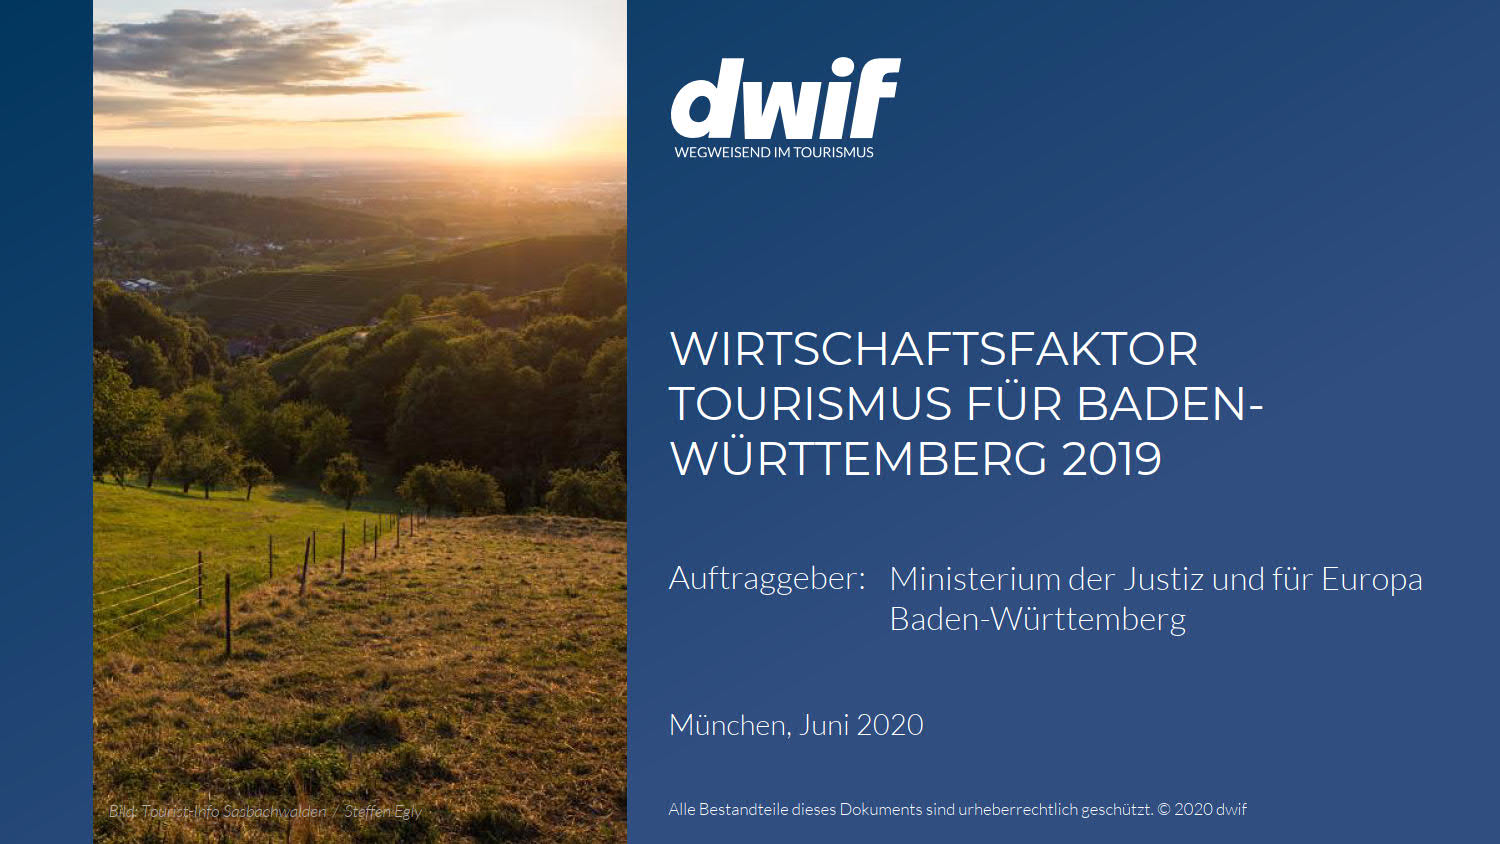 Wirtschaftsfaktor Tourismus Baden-Württemberg 2019 dwif Cover